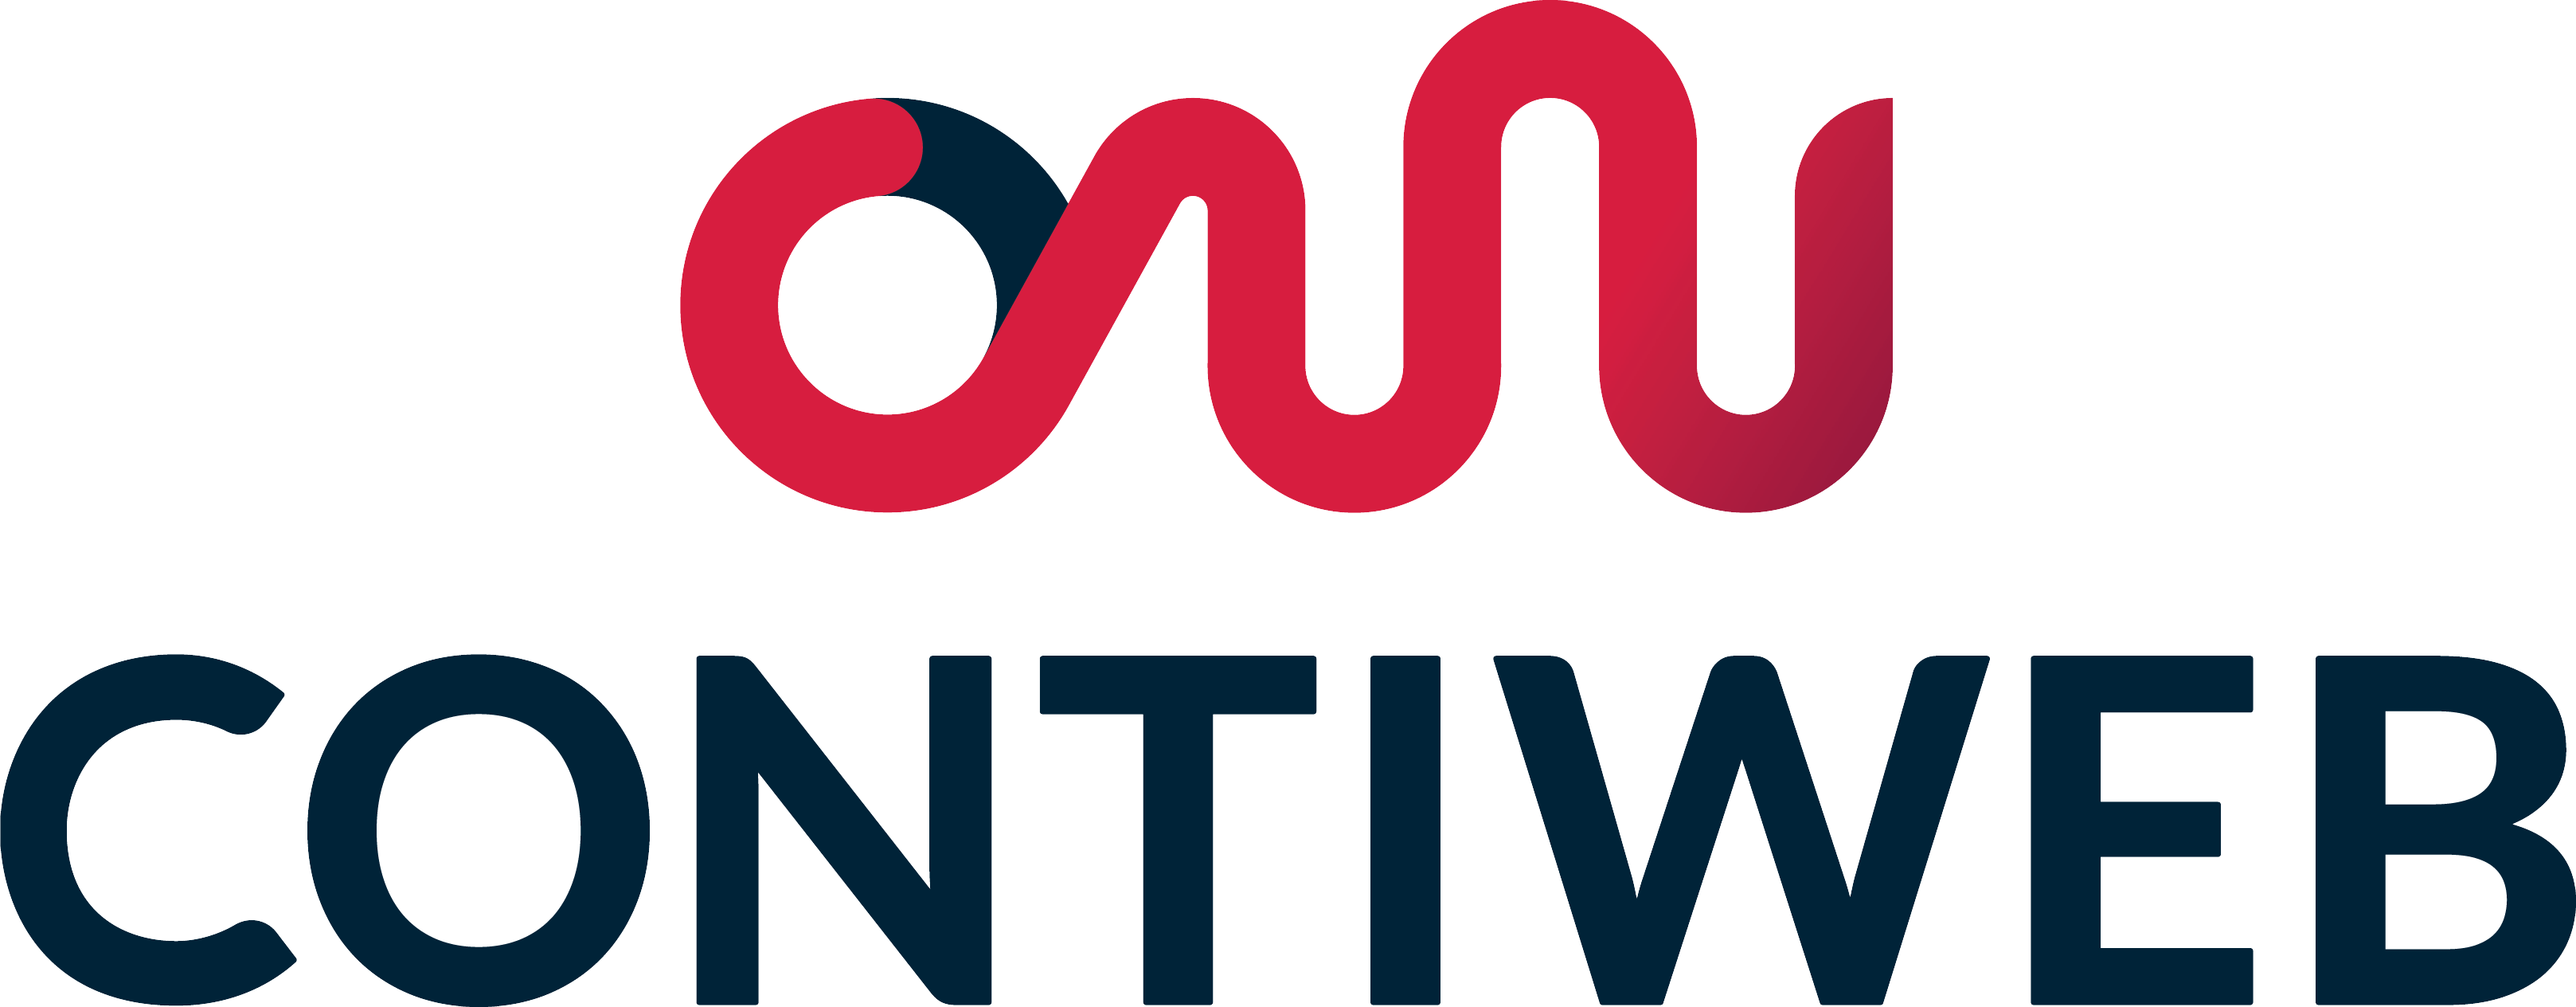 contiweb-logo-1